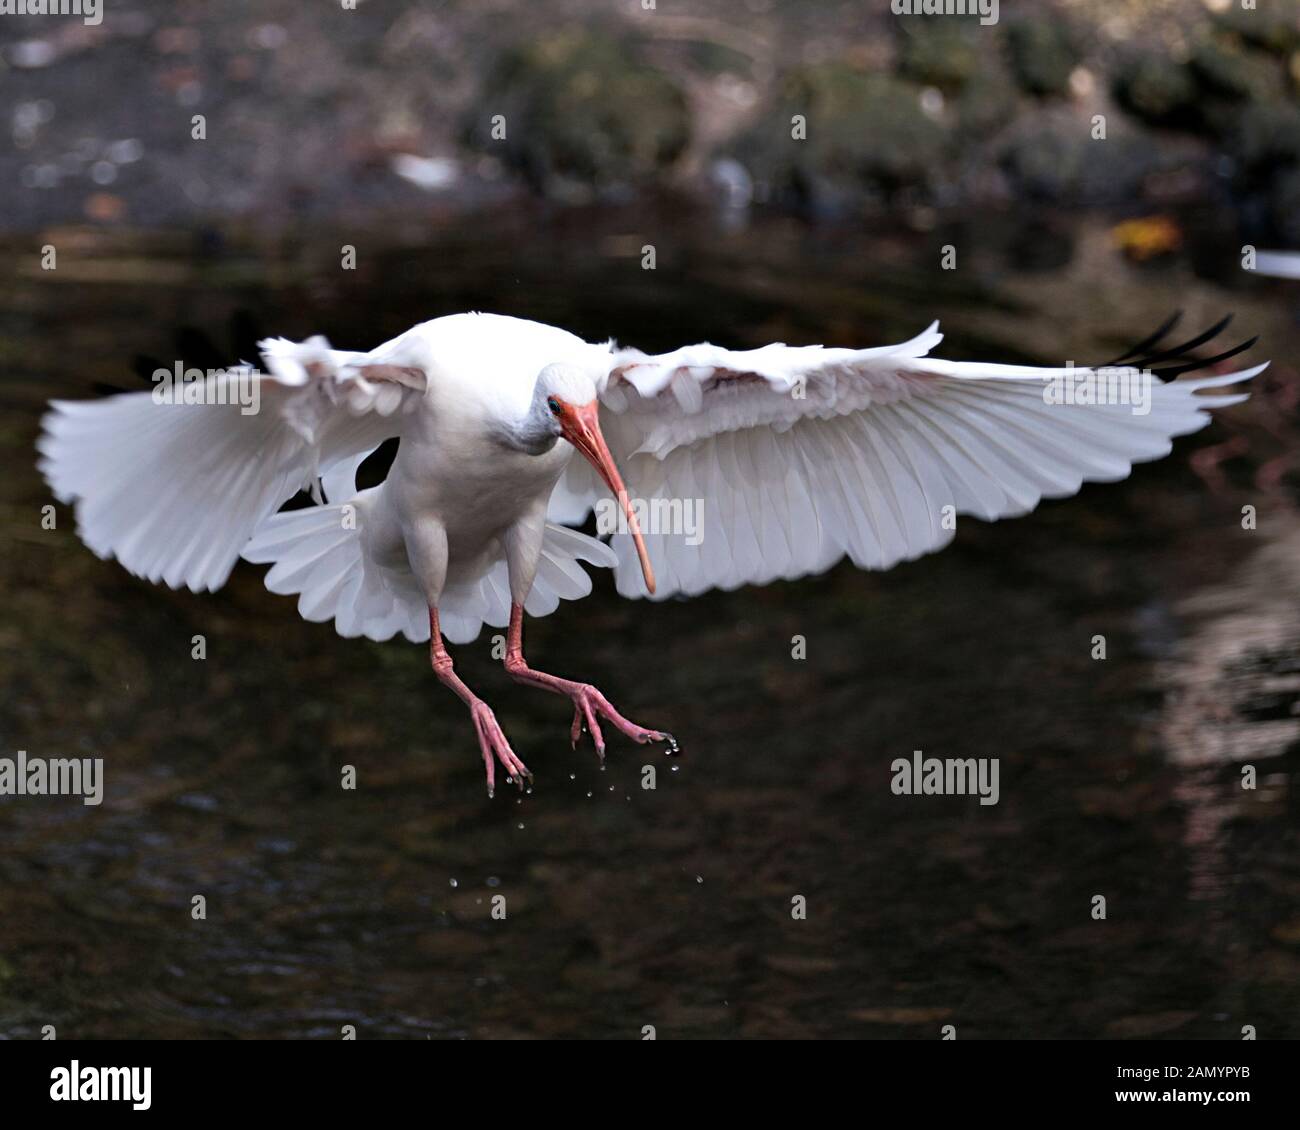 White Ibis Vogel in der Nähe Profil ansehen Landung auf dem Wasser mit Hintergrund, mit ausgebreiteten Flügeln, weiße Federn Gefieder, Körper, Kopf, Augen, Schnabel, lo Stockfoto